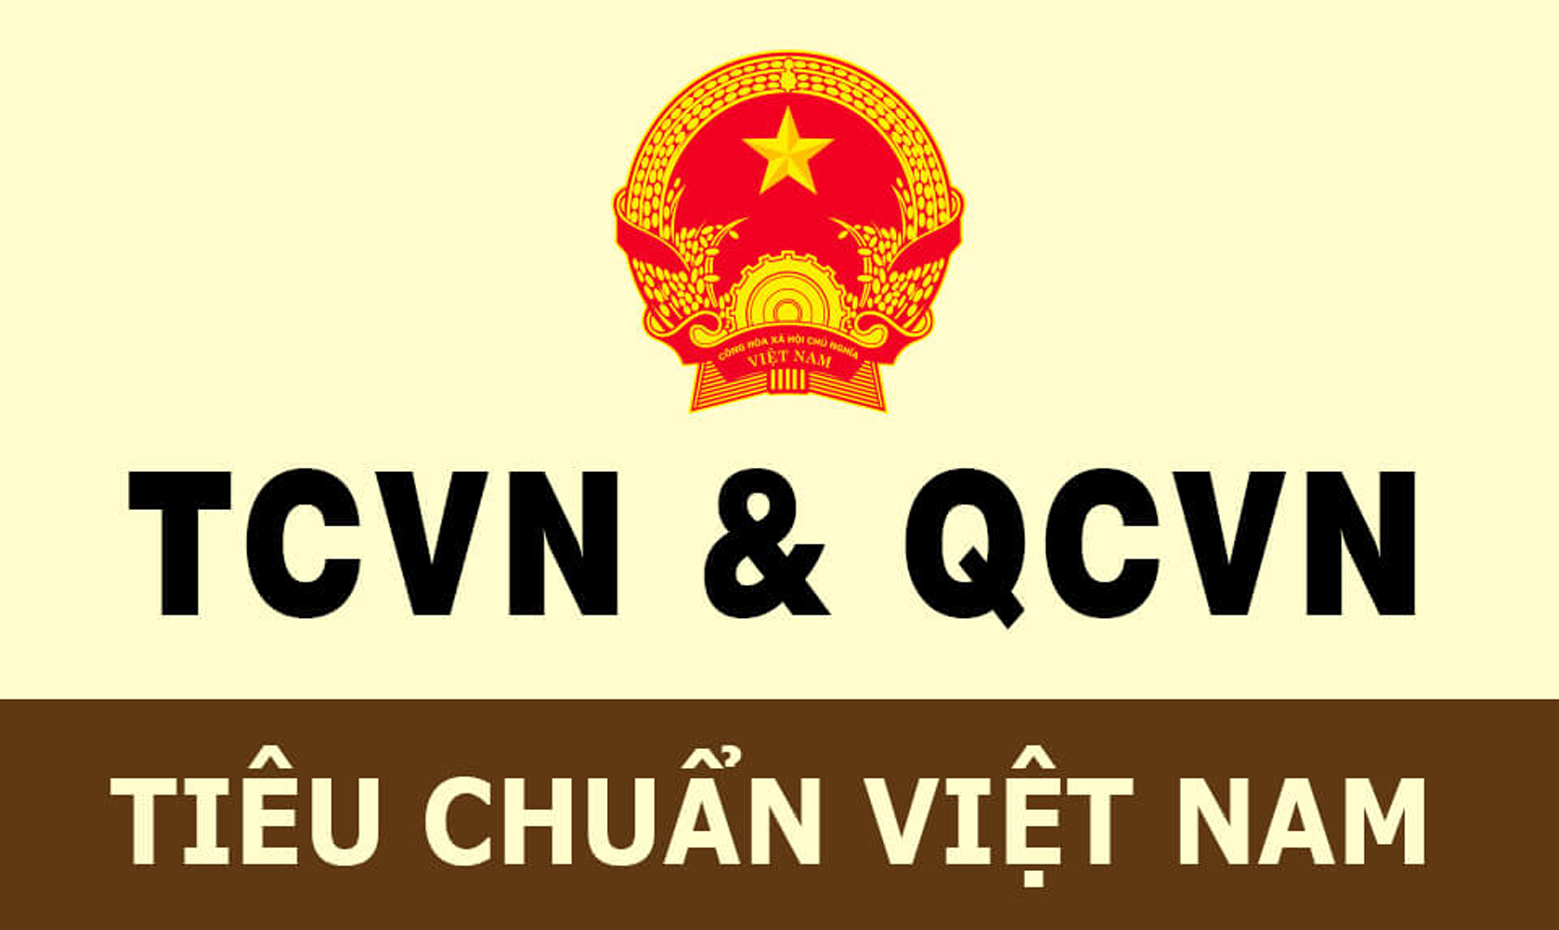 Quy chuẩn là gì? So sánh quy chuẩn (QCVN) và tiêu chuẩn (TCVN)?